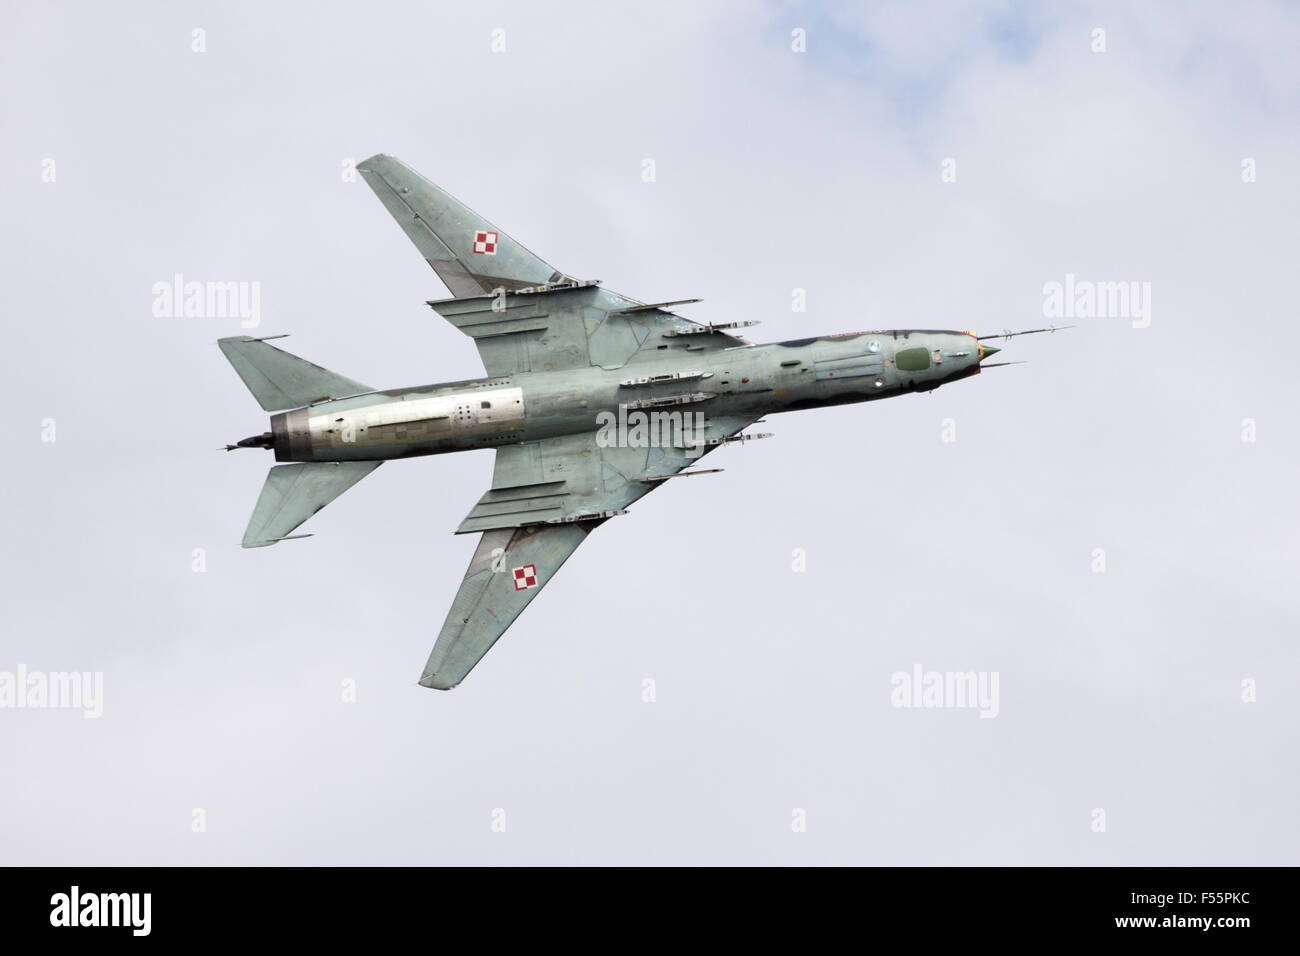 Armée de l'Air polonaise Sukhoi Su-22 survol avion Bombardier à la journée portes ouvertes de l'Armée de l'air néerlandaise. Banque D'Images